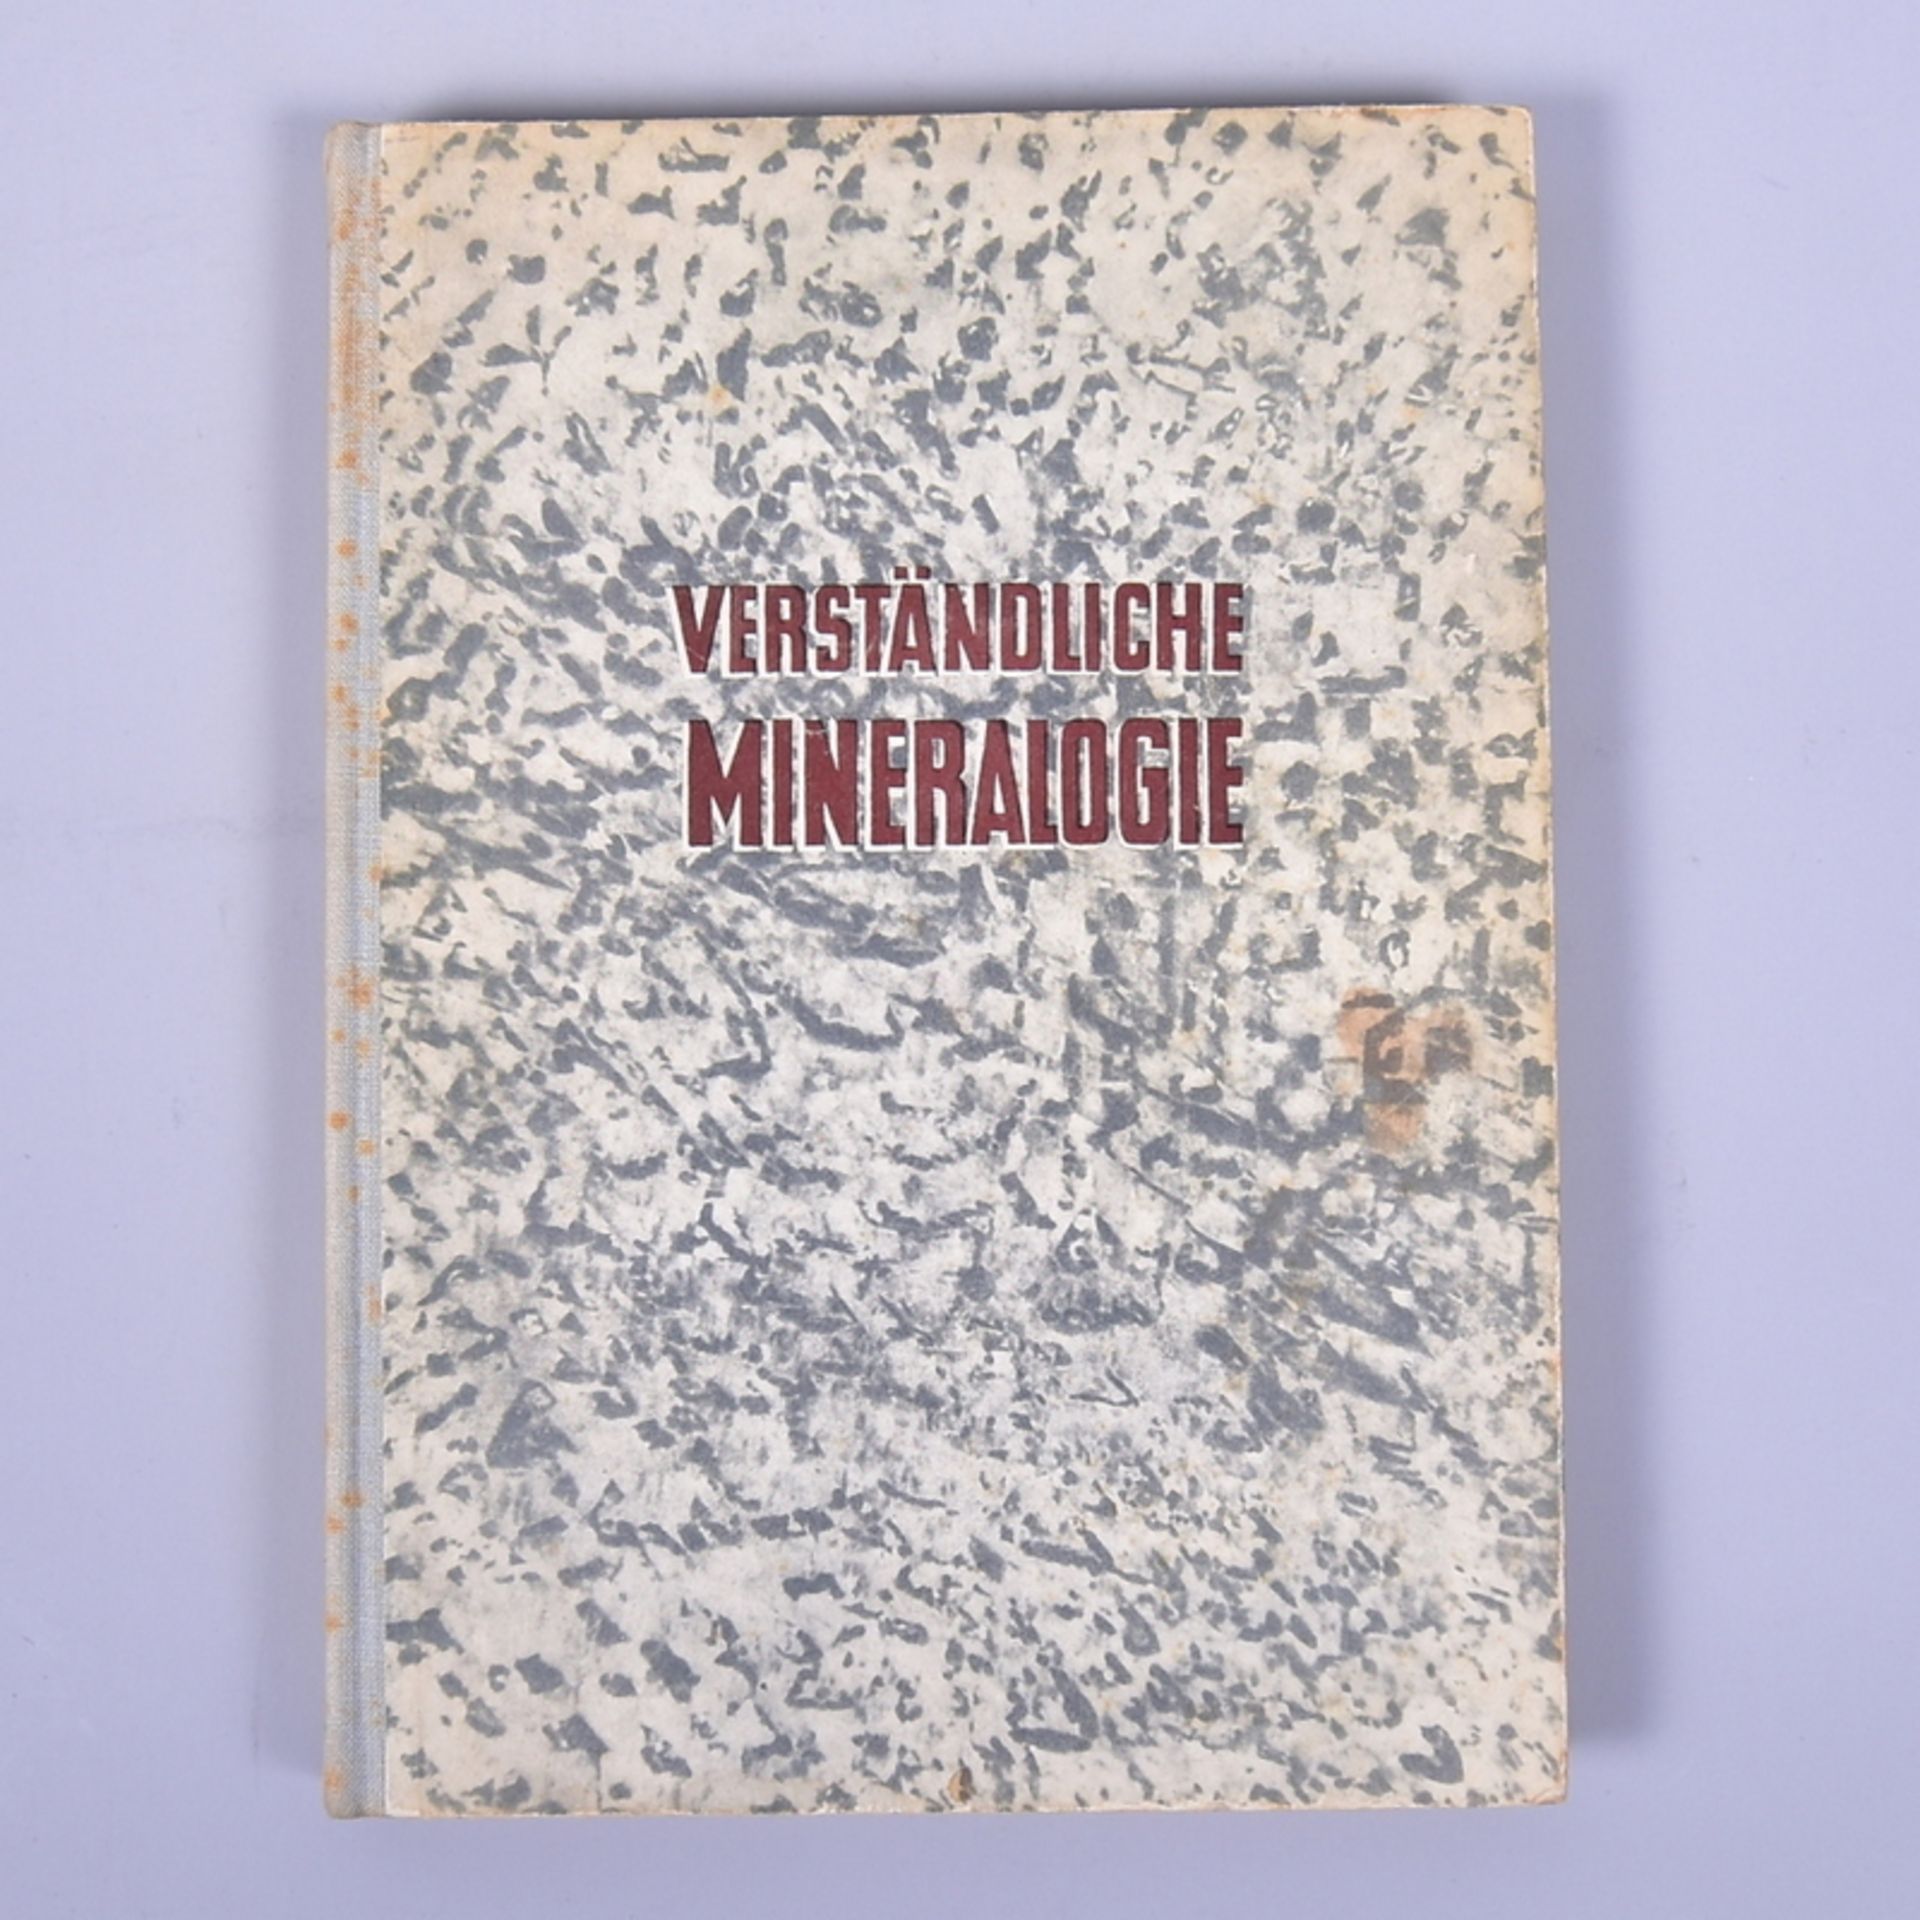 "Verständliche Mineralogie" v. A.E. Fersman, Verlag Neues Leben Berlin 1949, leichte Altersspuren